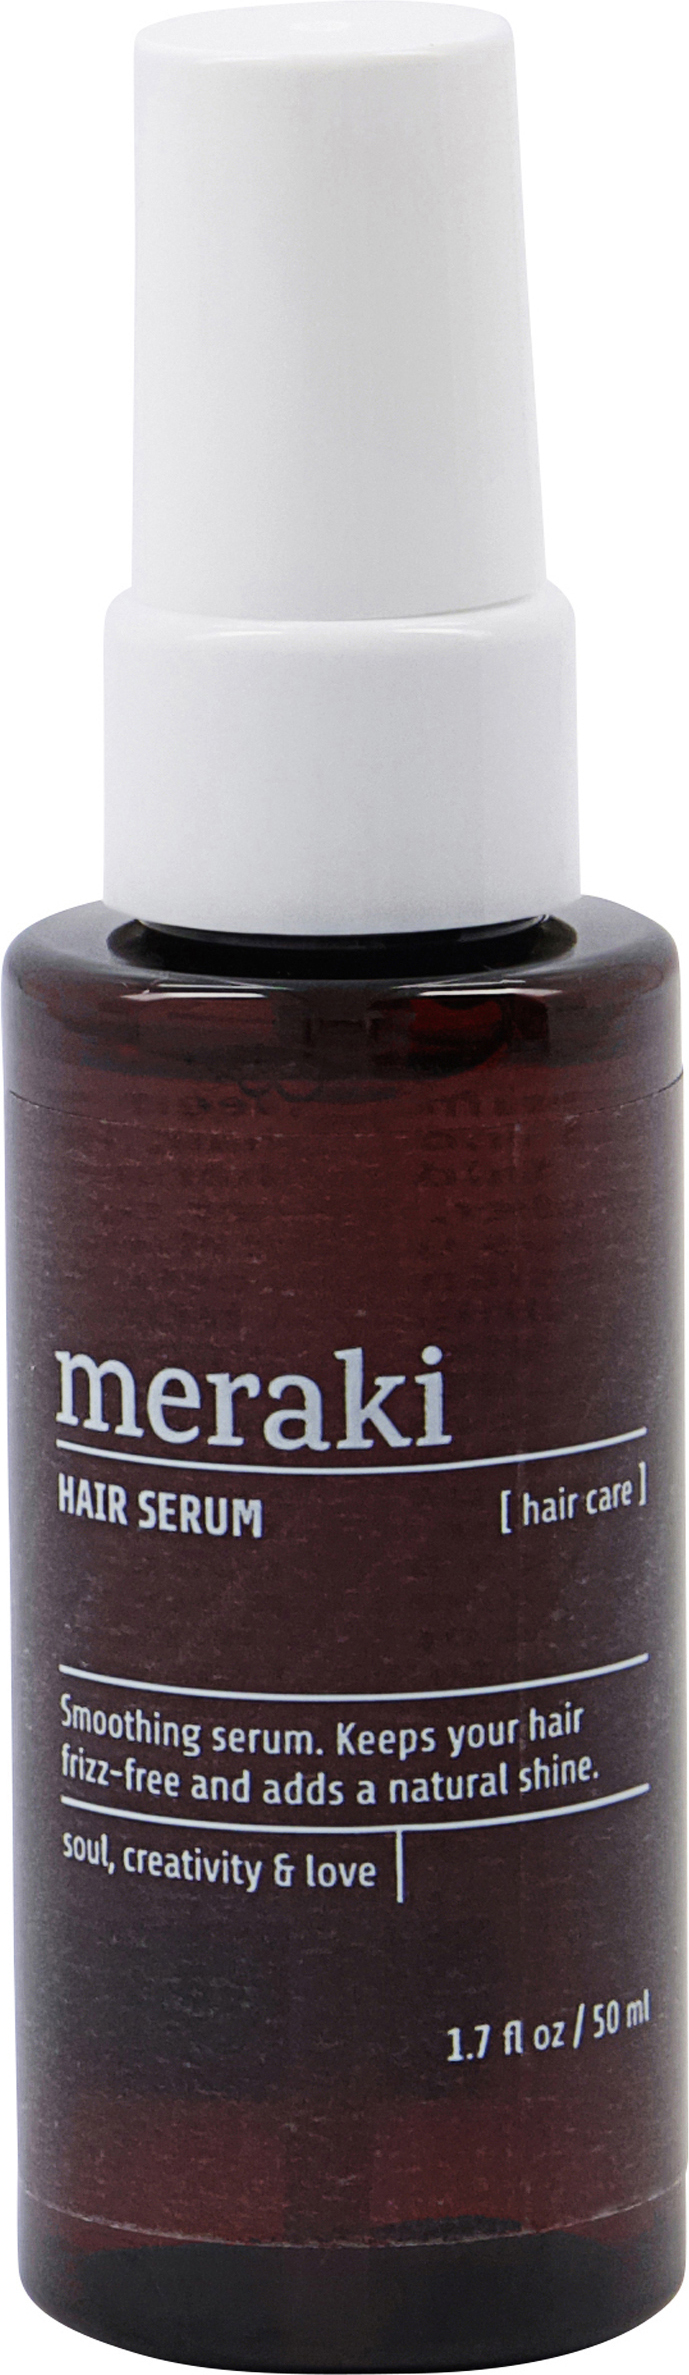 Meraki Hair Care Hair Serum 50 ml